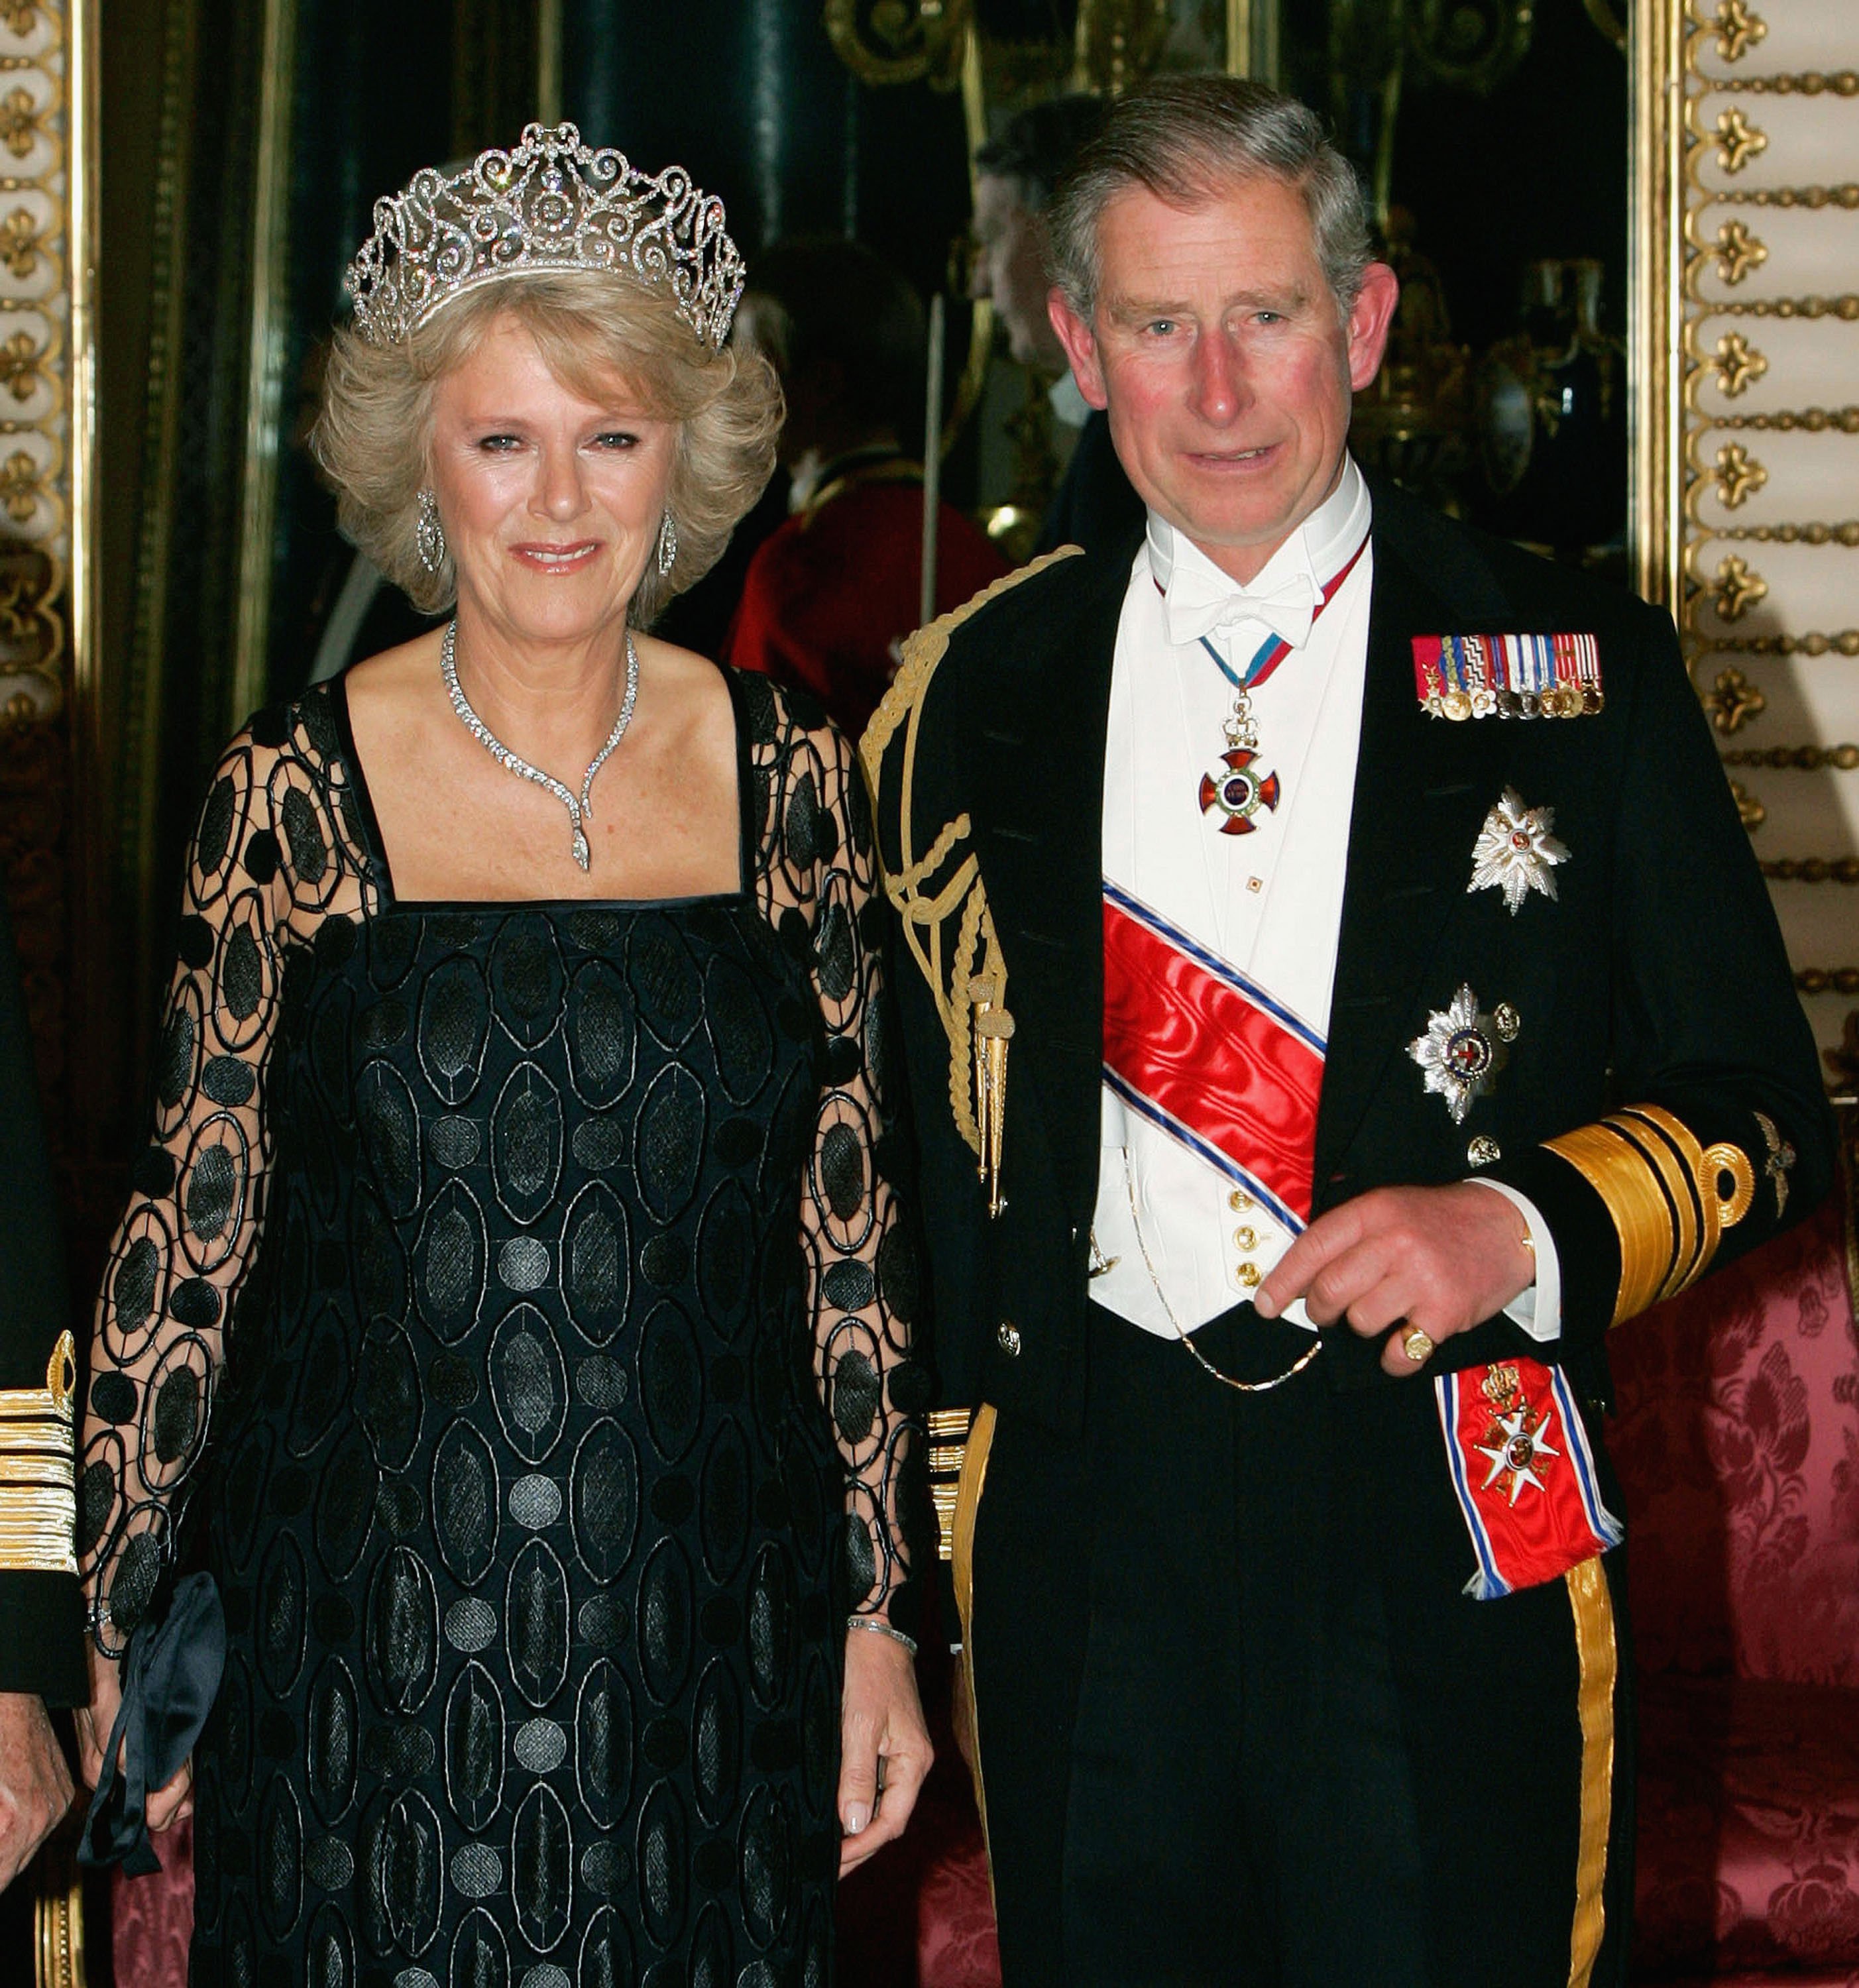 Camilla Duquesa de Cornualles llega con el príncipe Charles a un banquete en el Palacio de Buckingham el 25 de octubre de 2005 en Londres, Inglaterra. | Foto: Getty Images